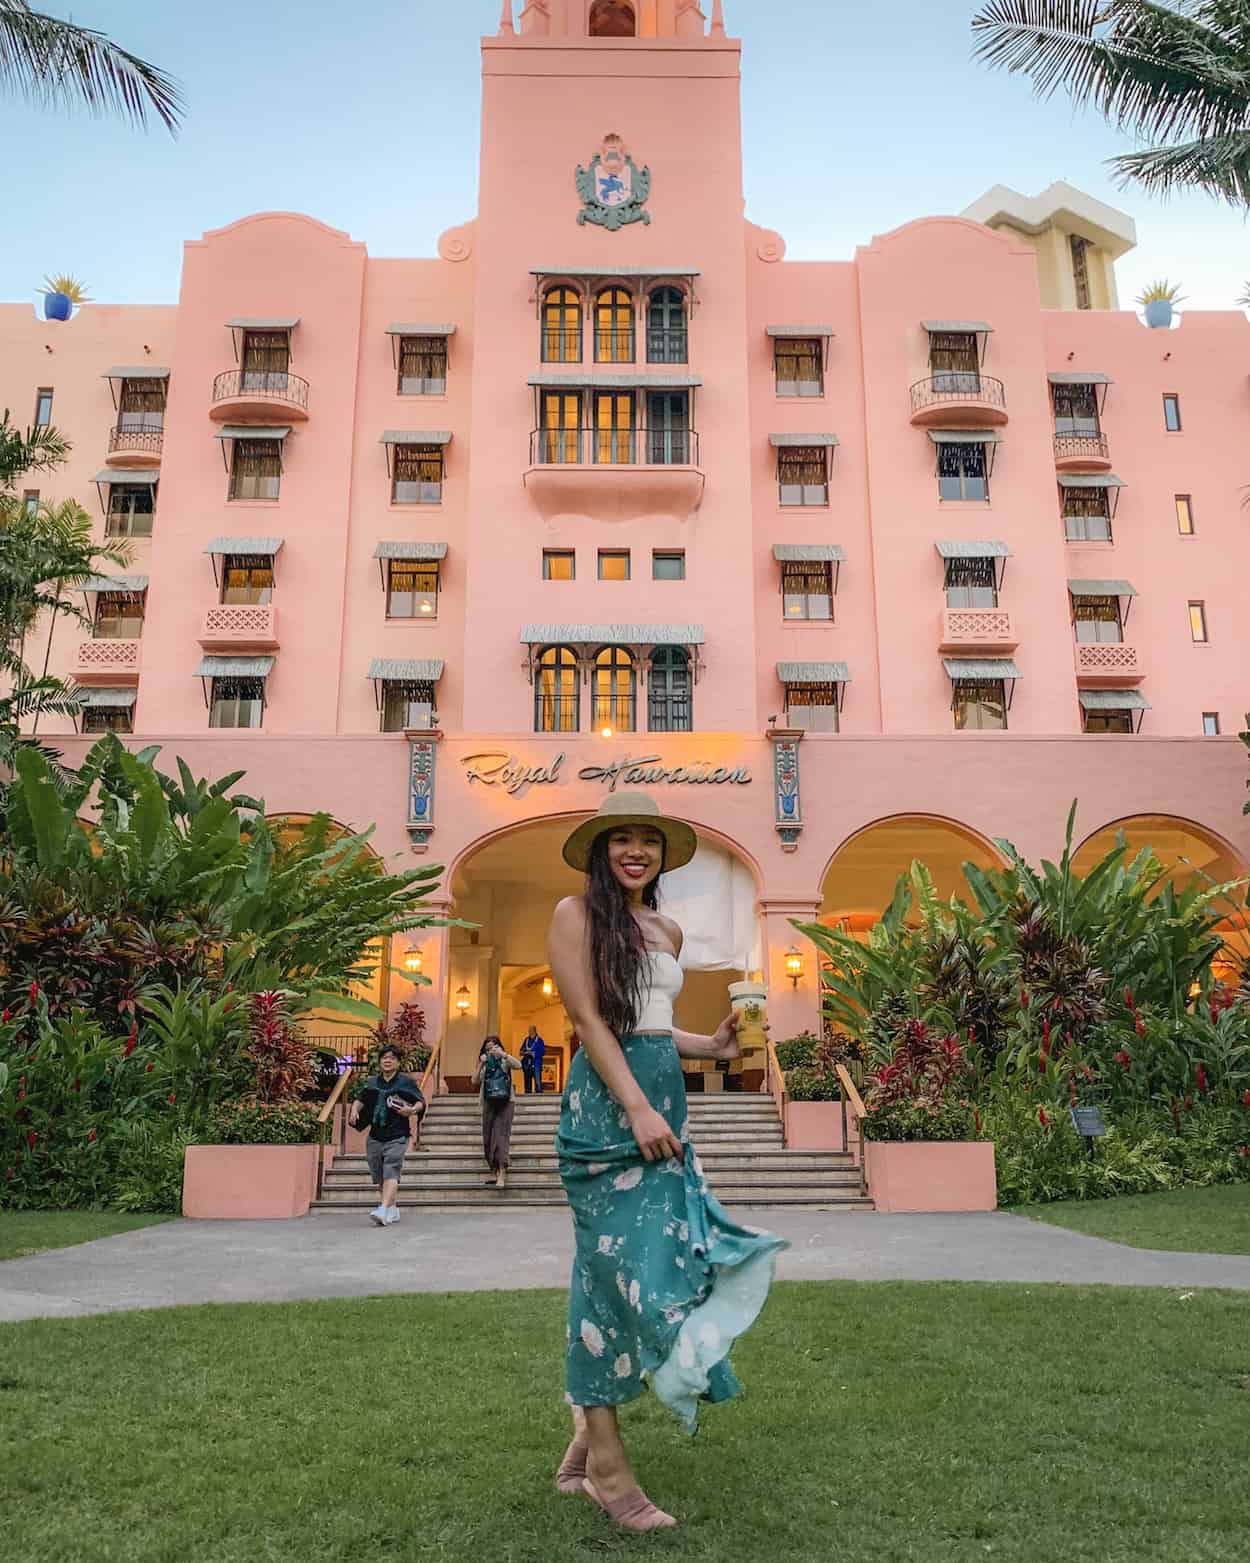 The Royal Hawaiian Hotel in Waikiki, Oahu, Hawaii